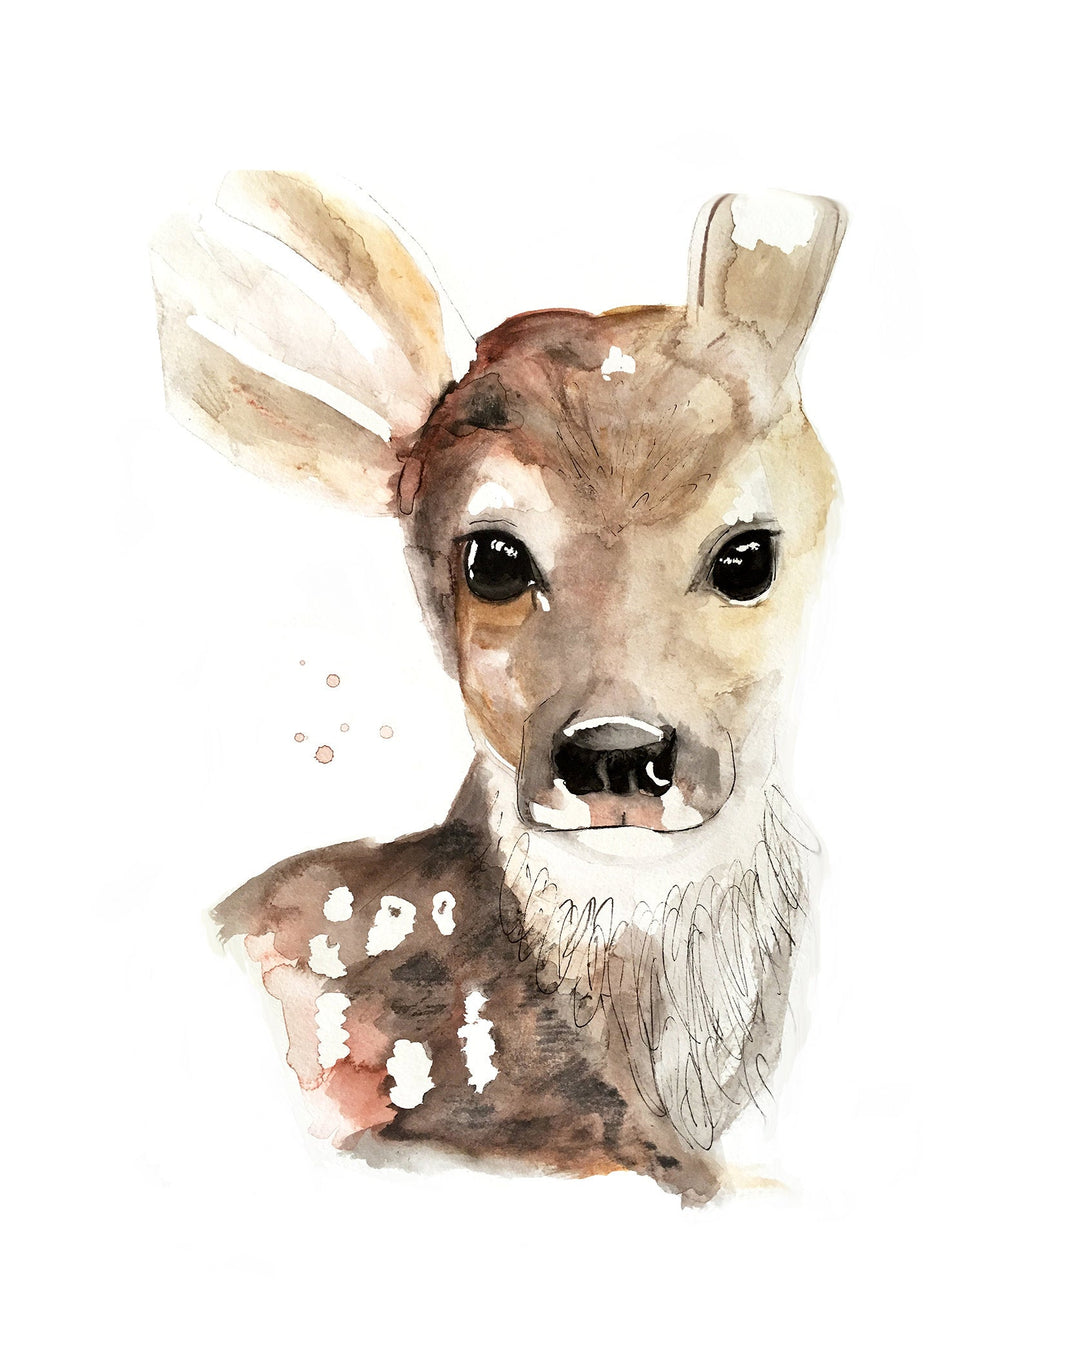 Illustration - Forest animals - deer